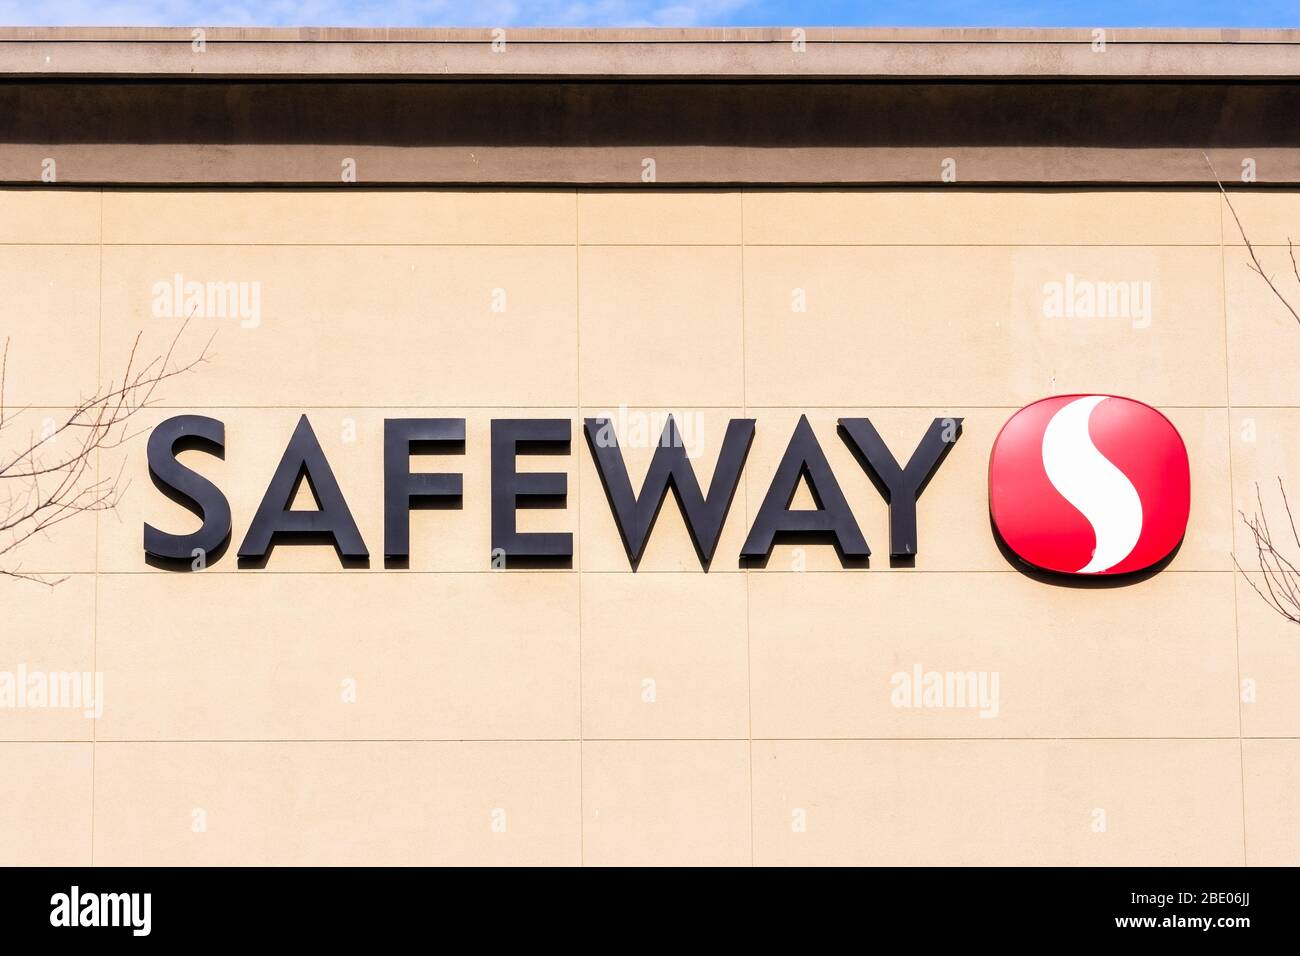 Jan 24, 2020 Mountain View / CA / USA - Nahaufnahme des Safeway-Schildes an der Fassade eines lokalen Stores; Safeway ist eine amerikanische Supermarktkette Stockfoto